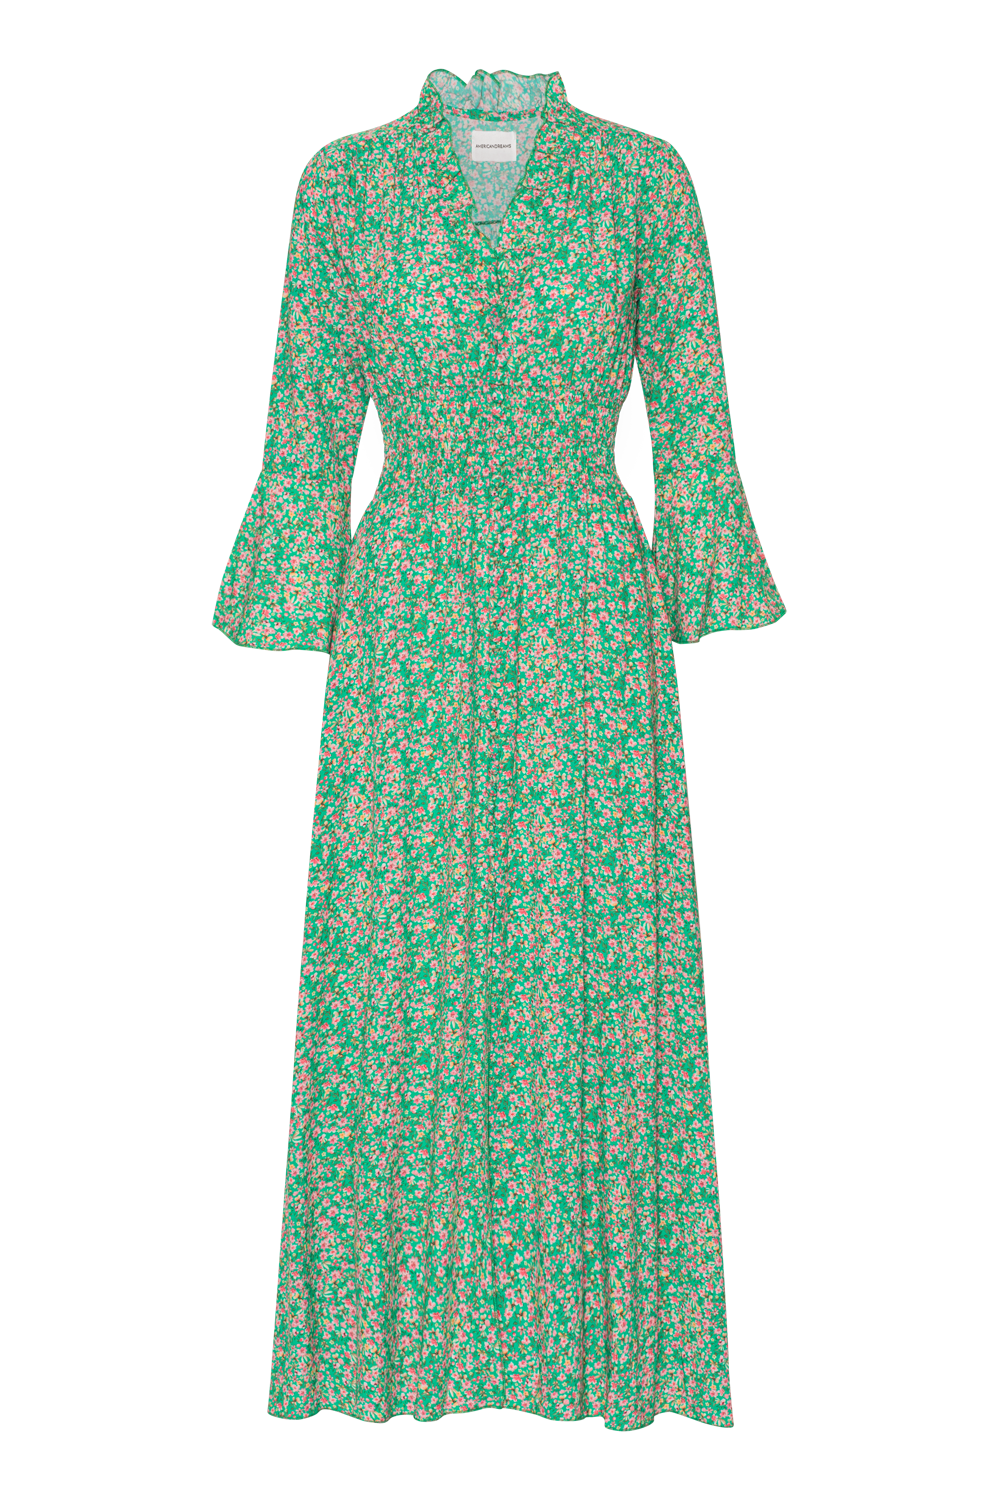 Sally Long Dress Green Flower